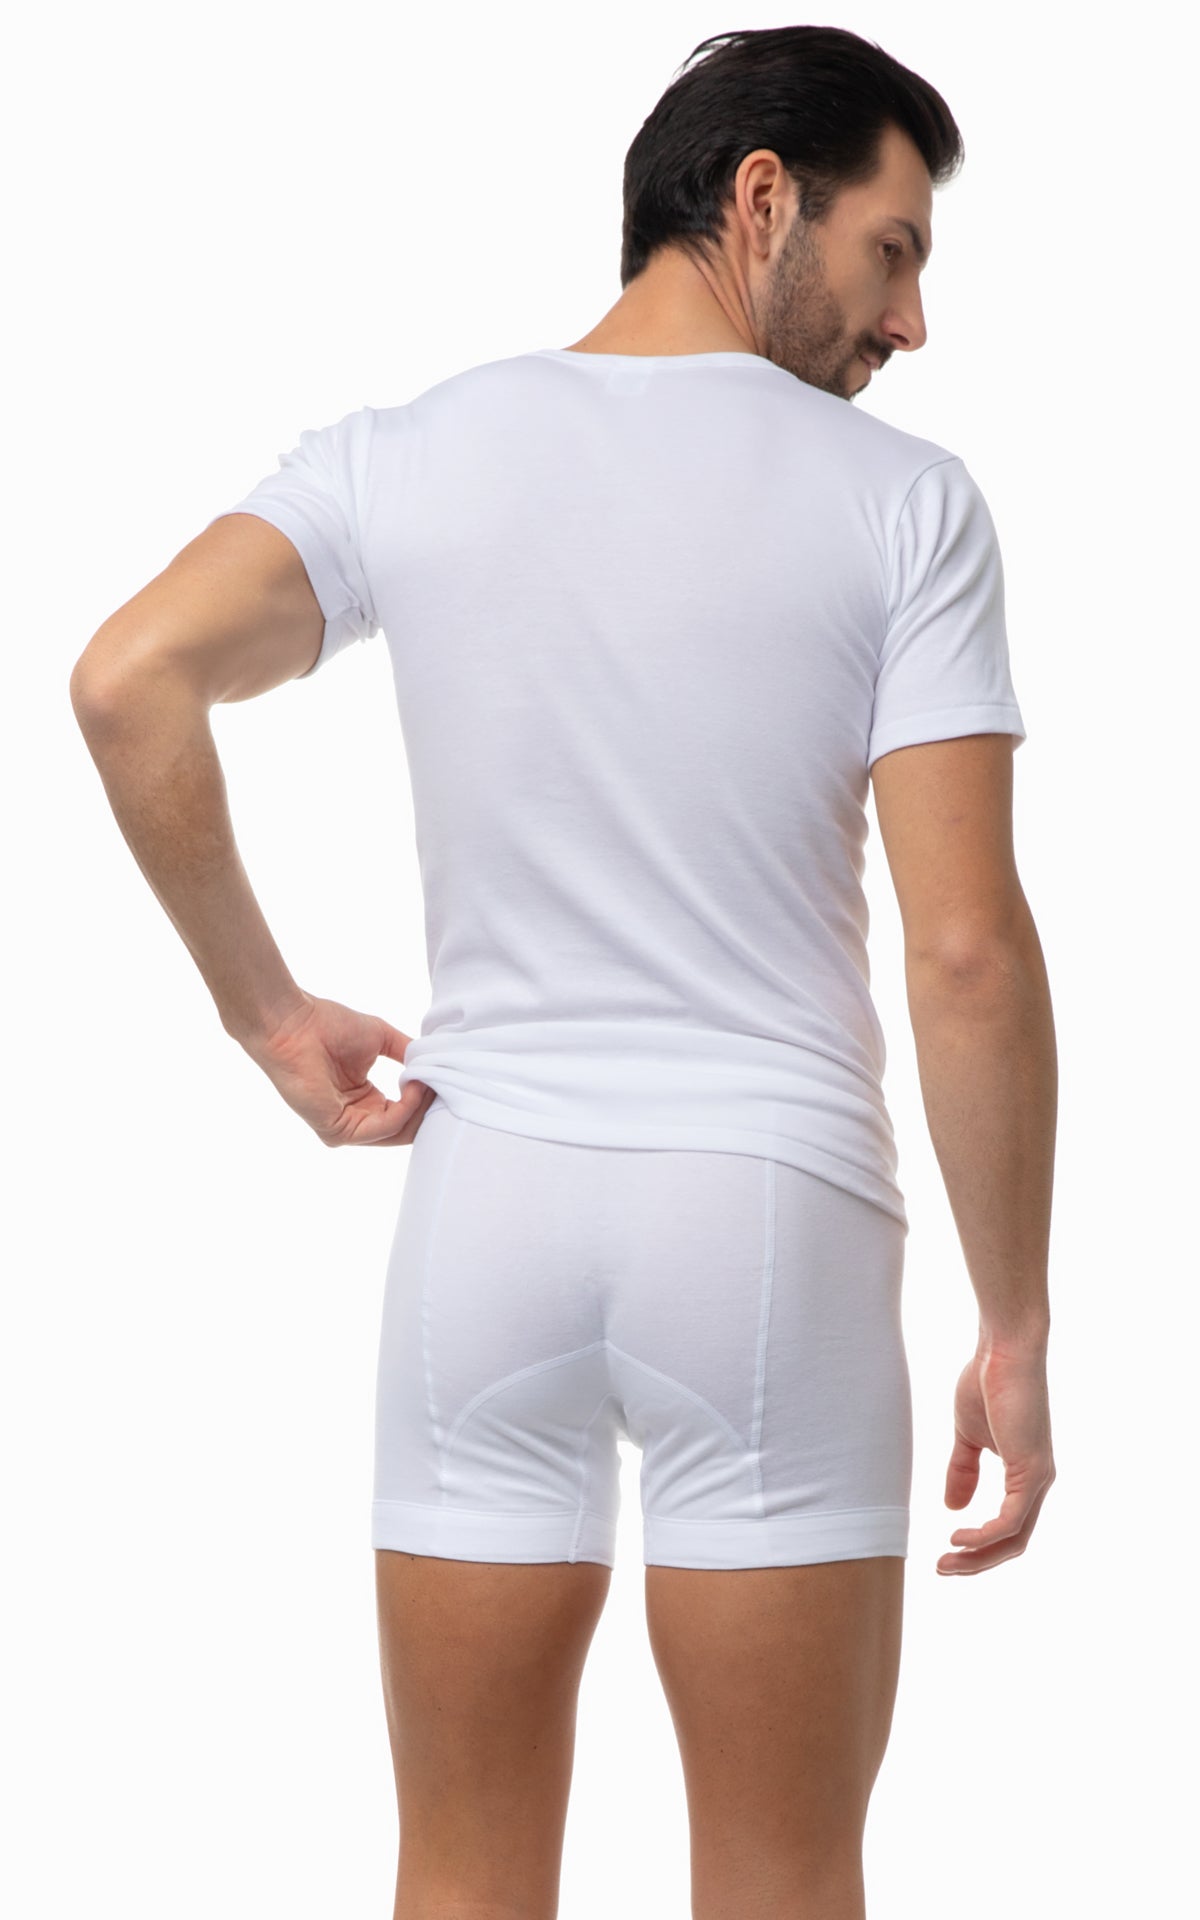 Classic Men's Scoop Neck Short Sleeve Undershirt 17000